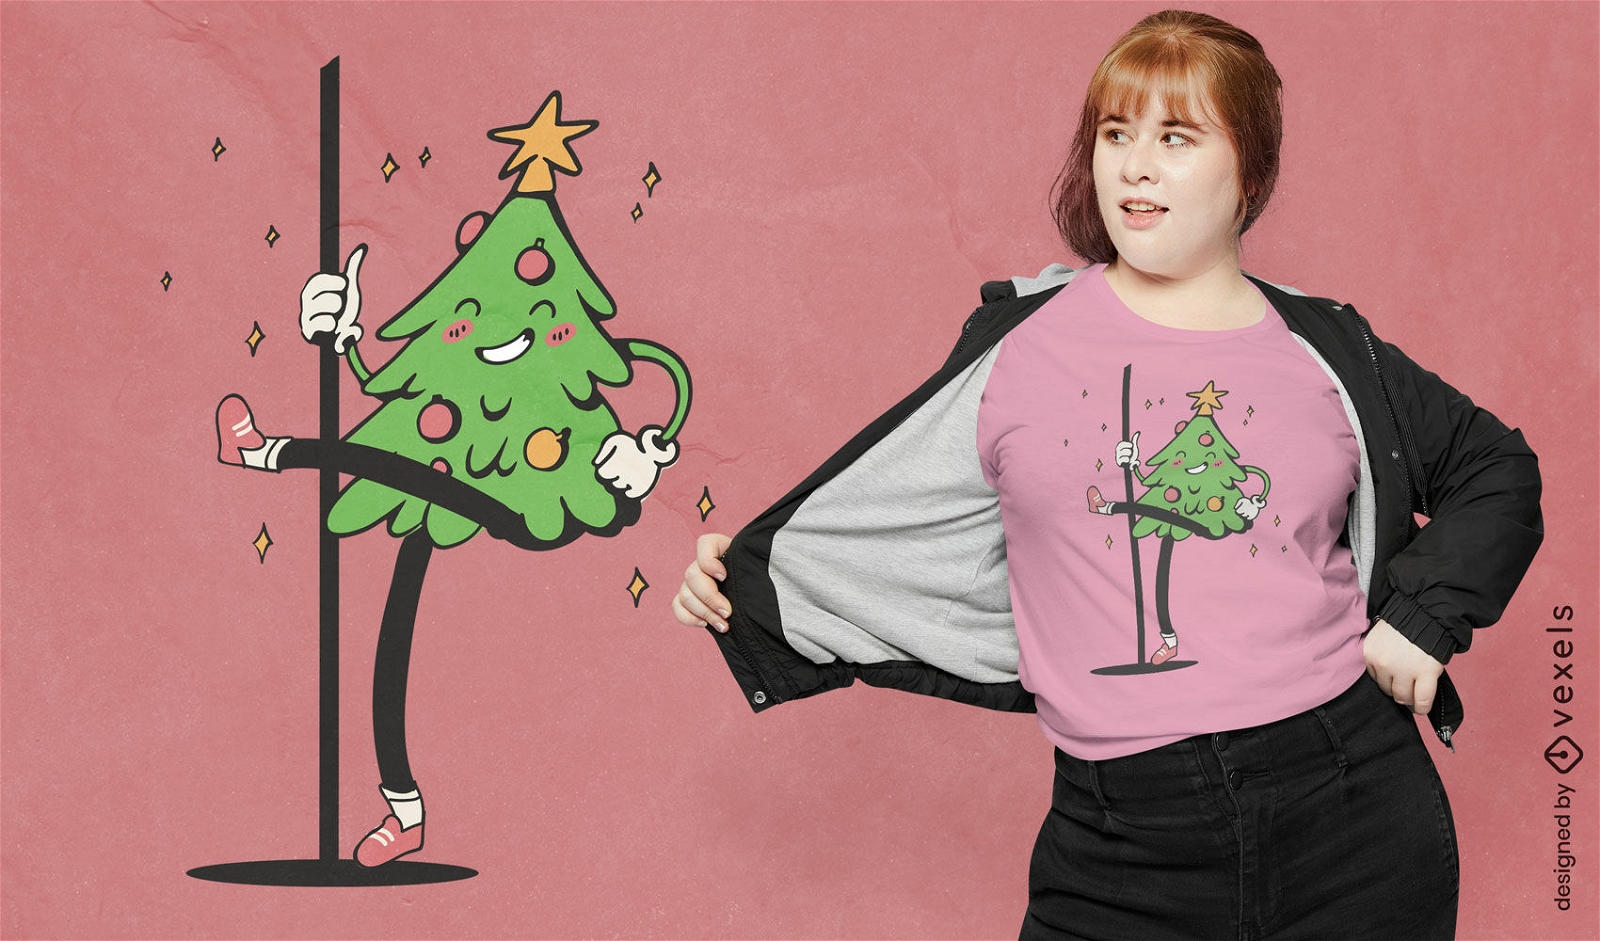 Festliches Weihnachtsbaum-Pole-Dance-T-Shirt-Design